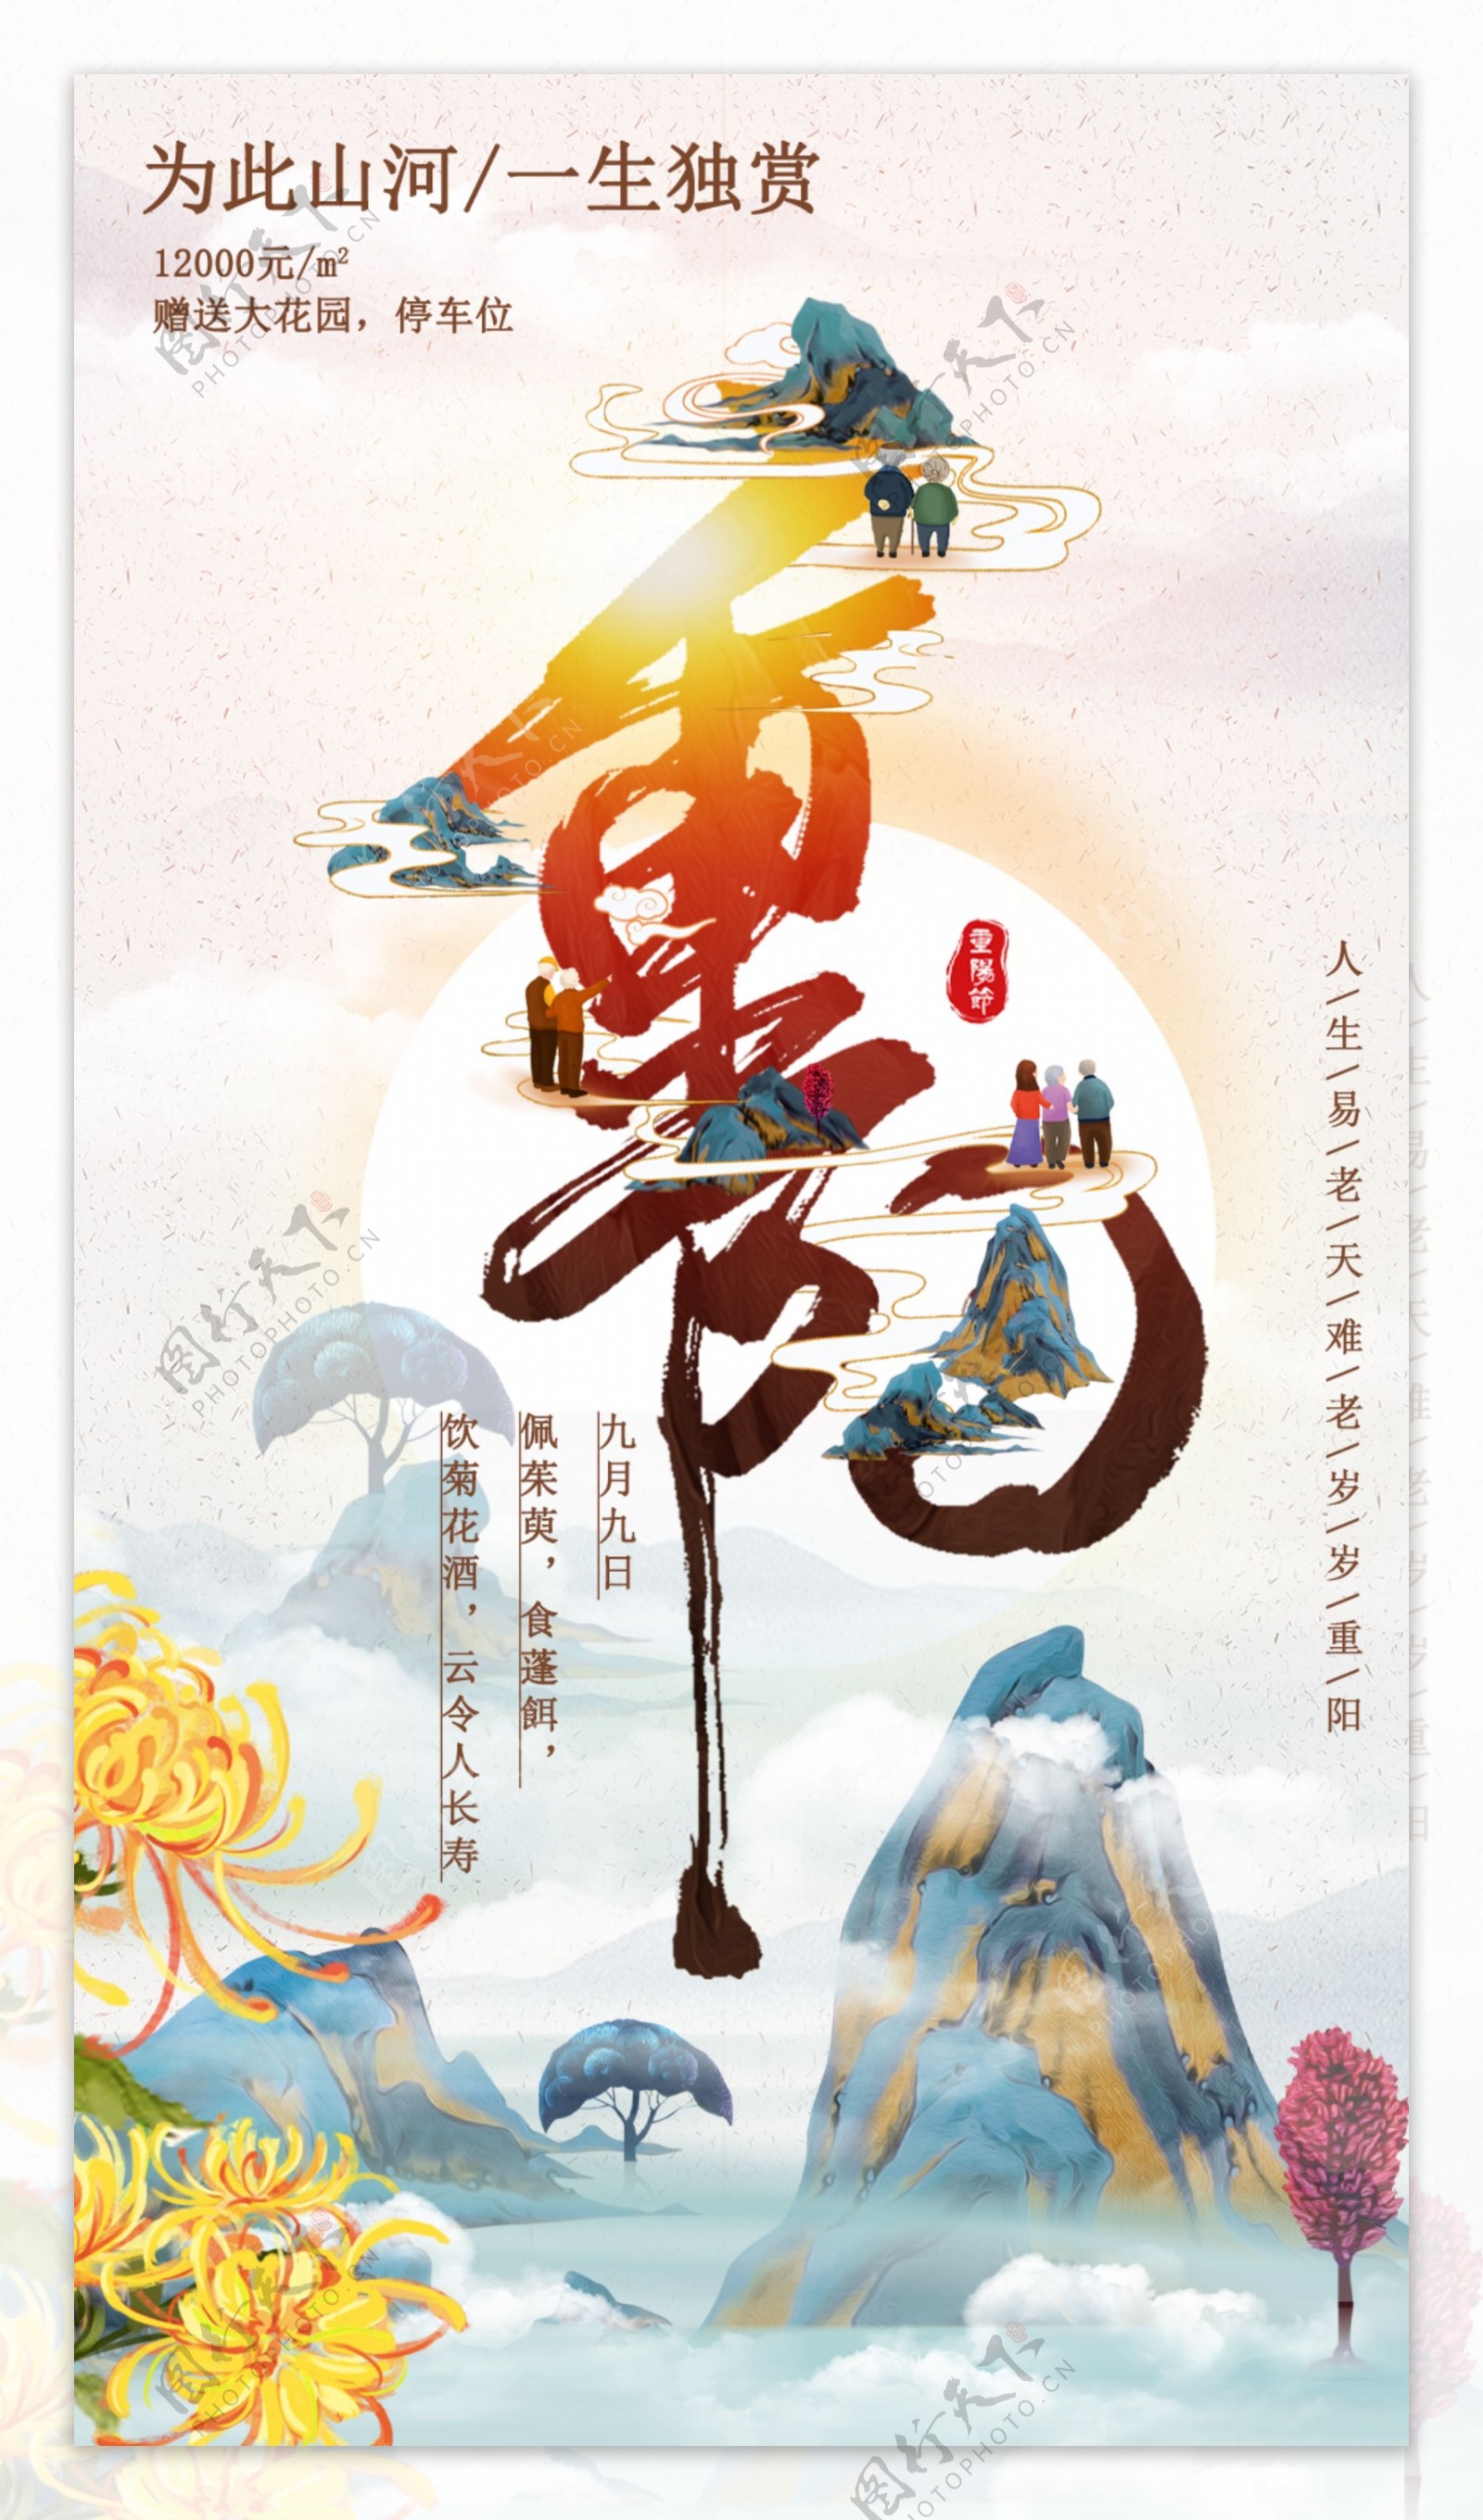 中国传统节日之九九重阳节中国风图片